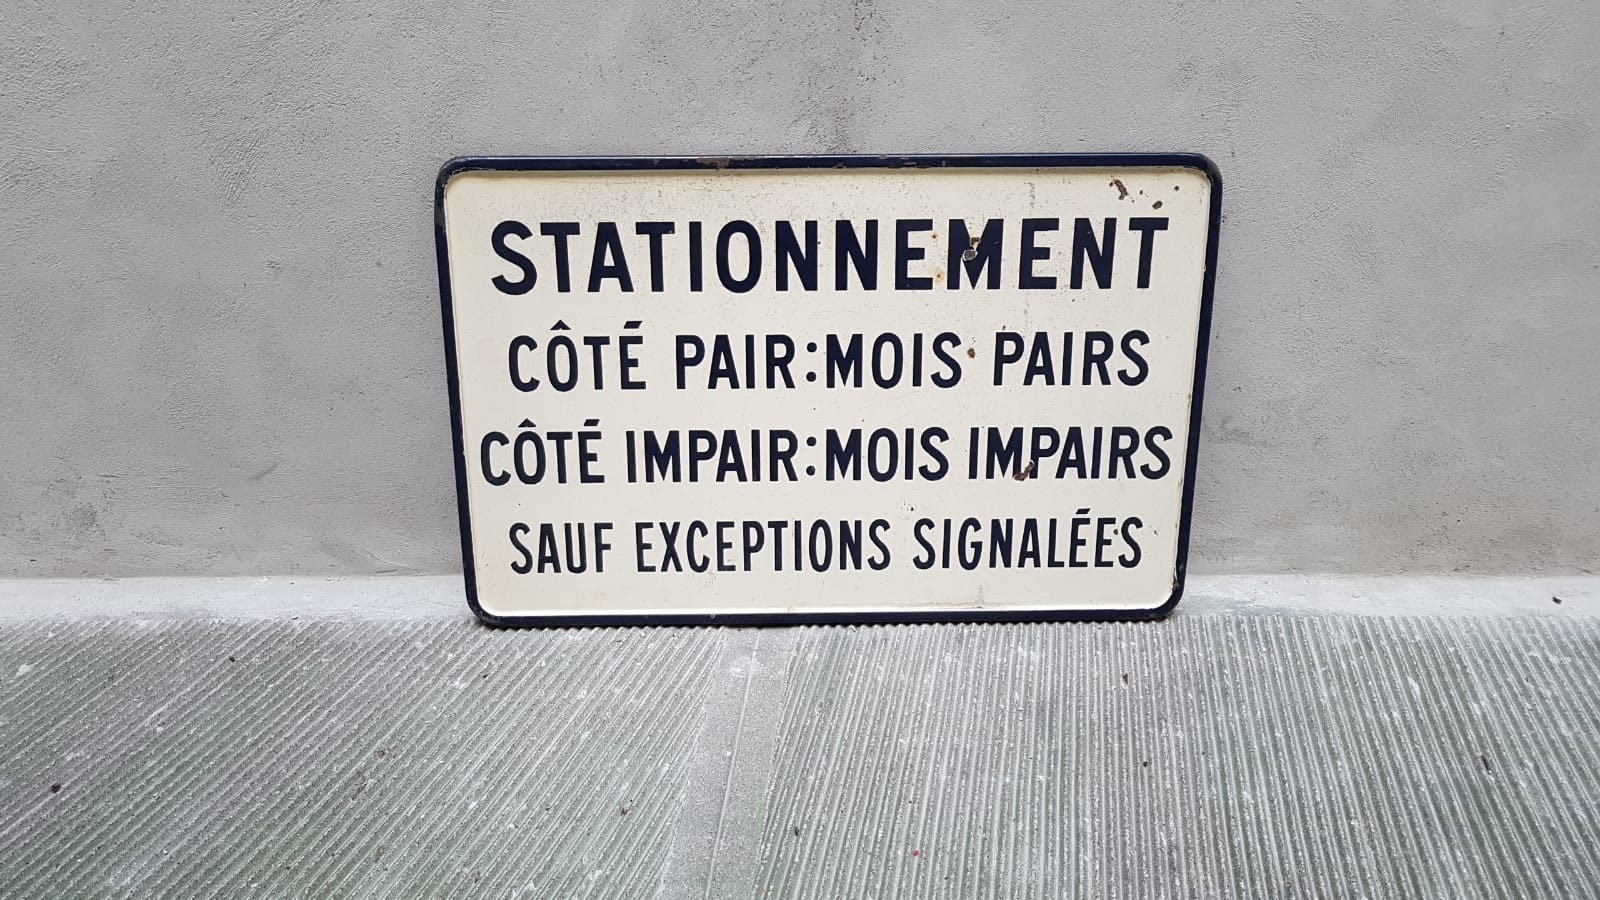 Targa francese 'Stationnement'